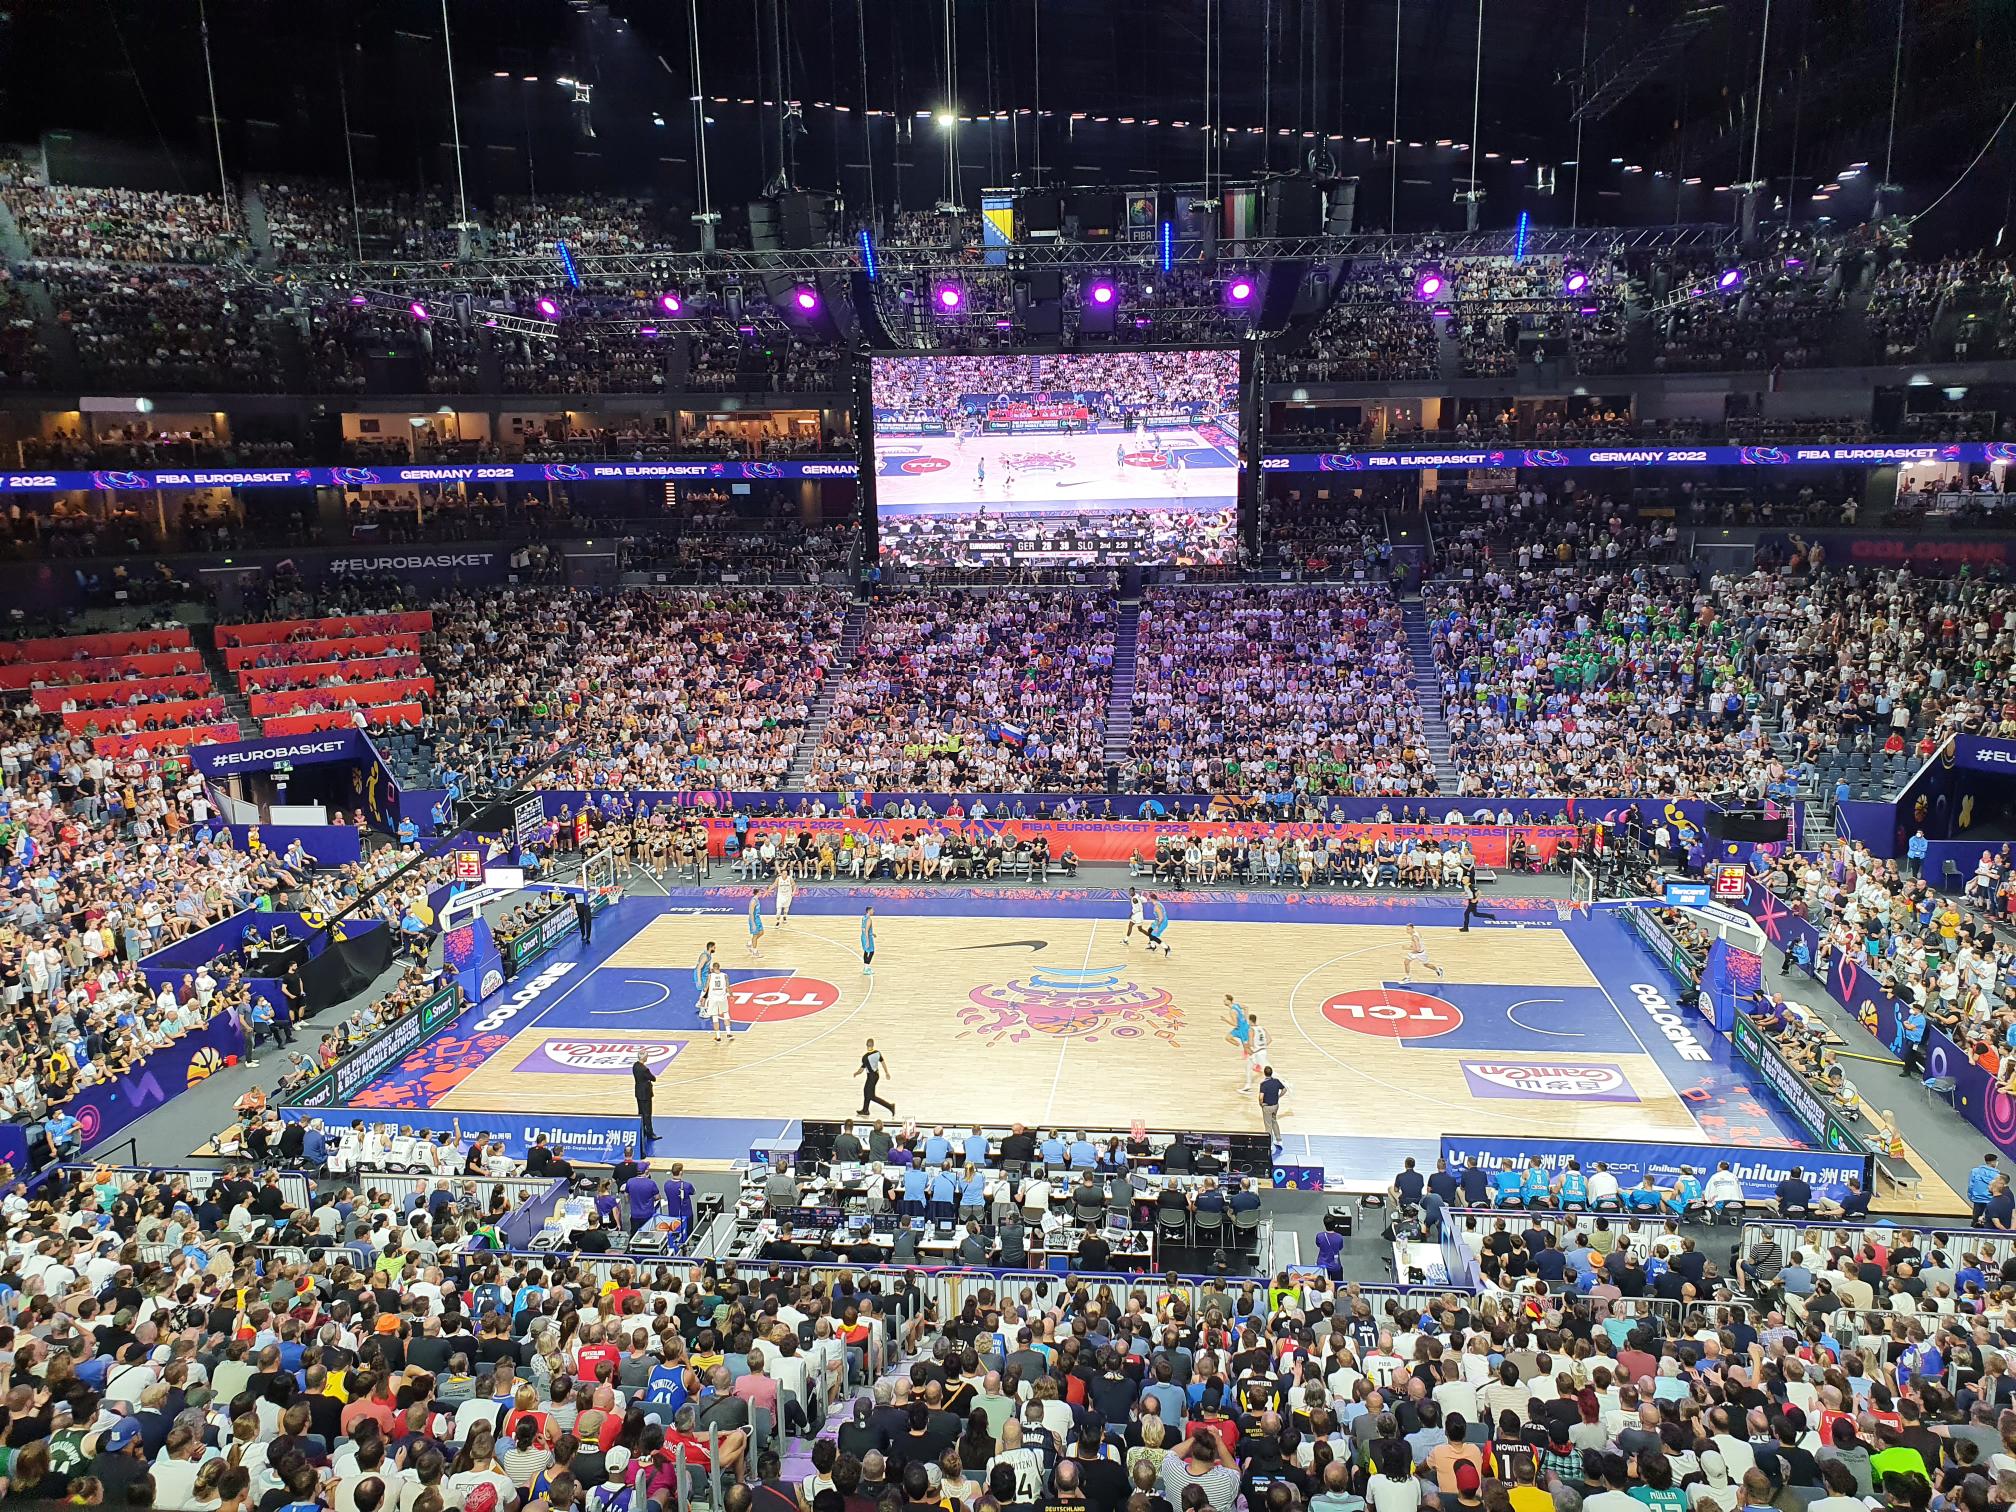 Defense wins Championships IT Security und Eurobasket 2022